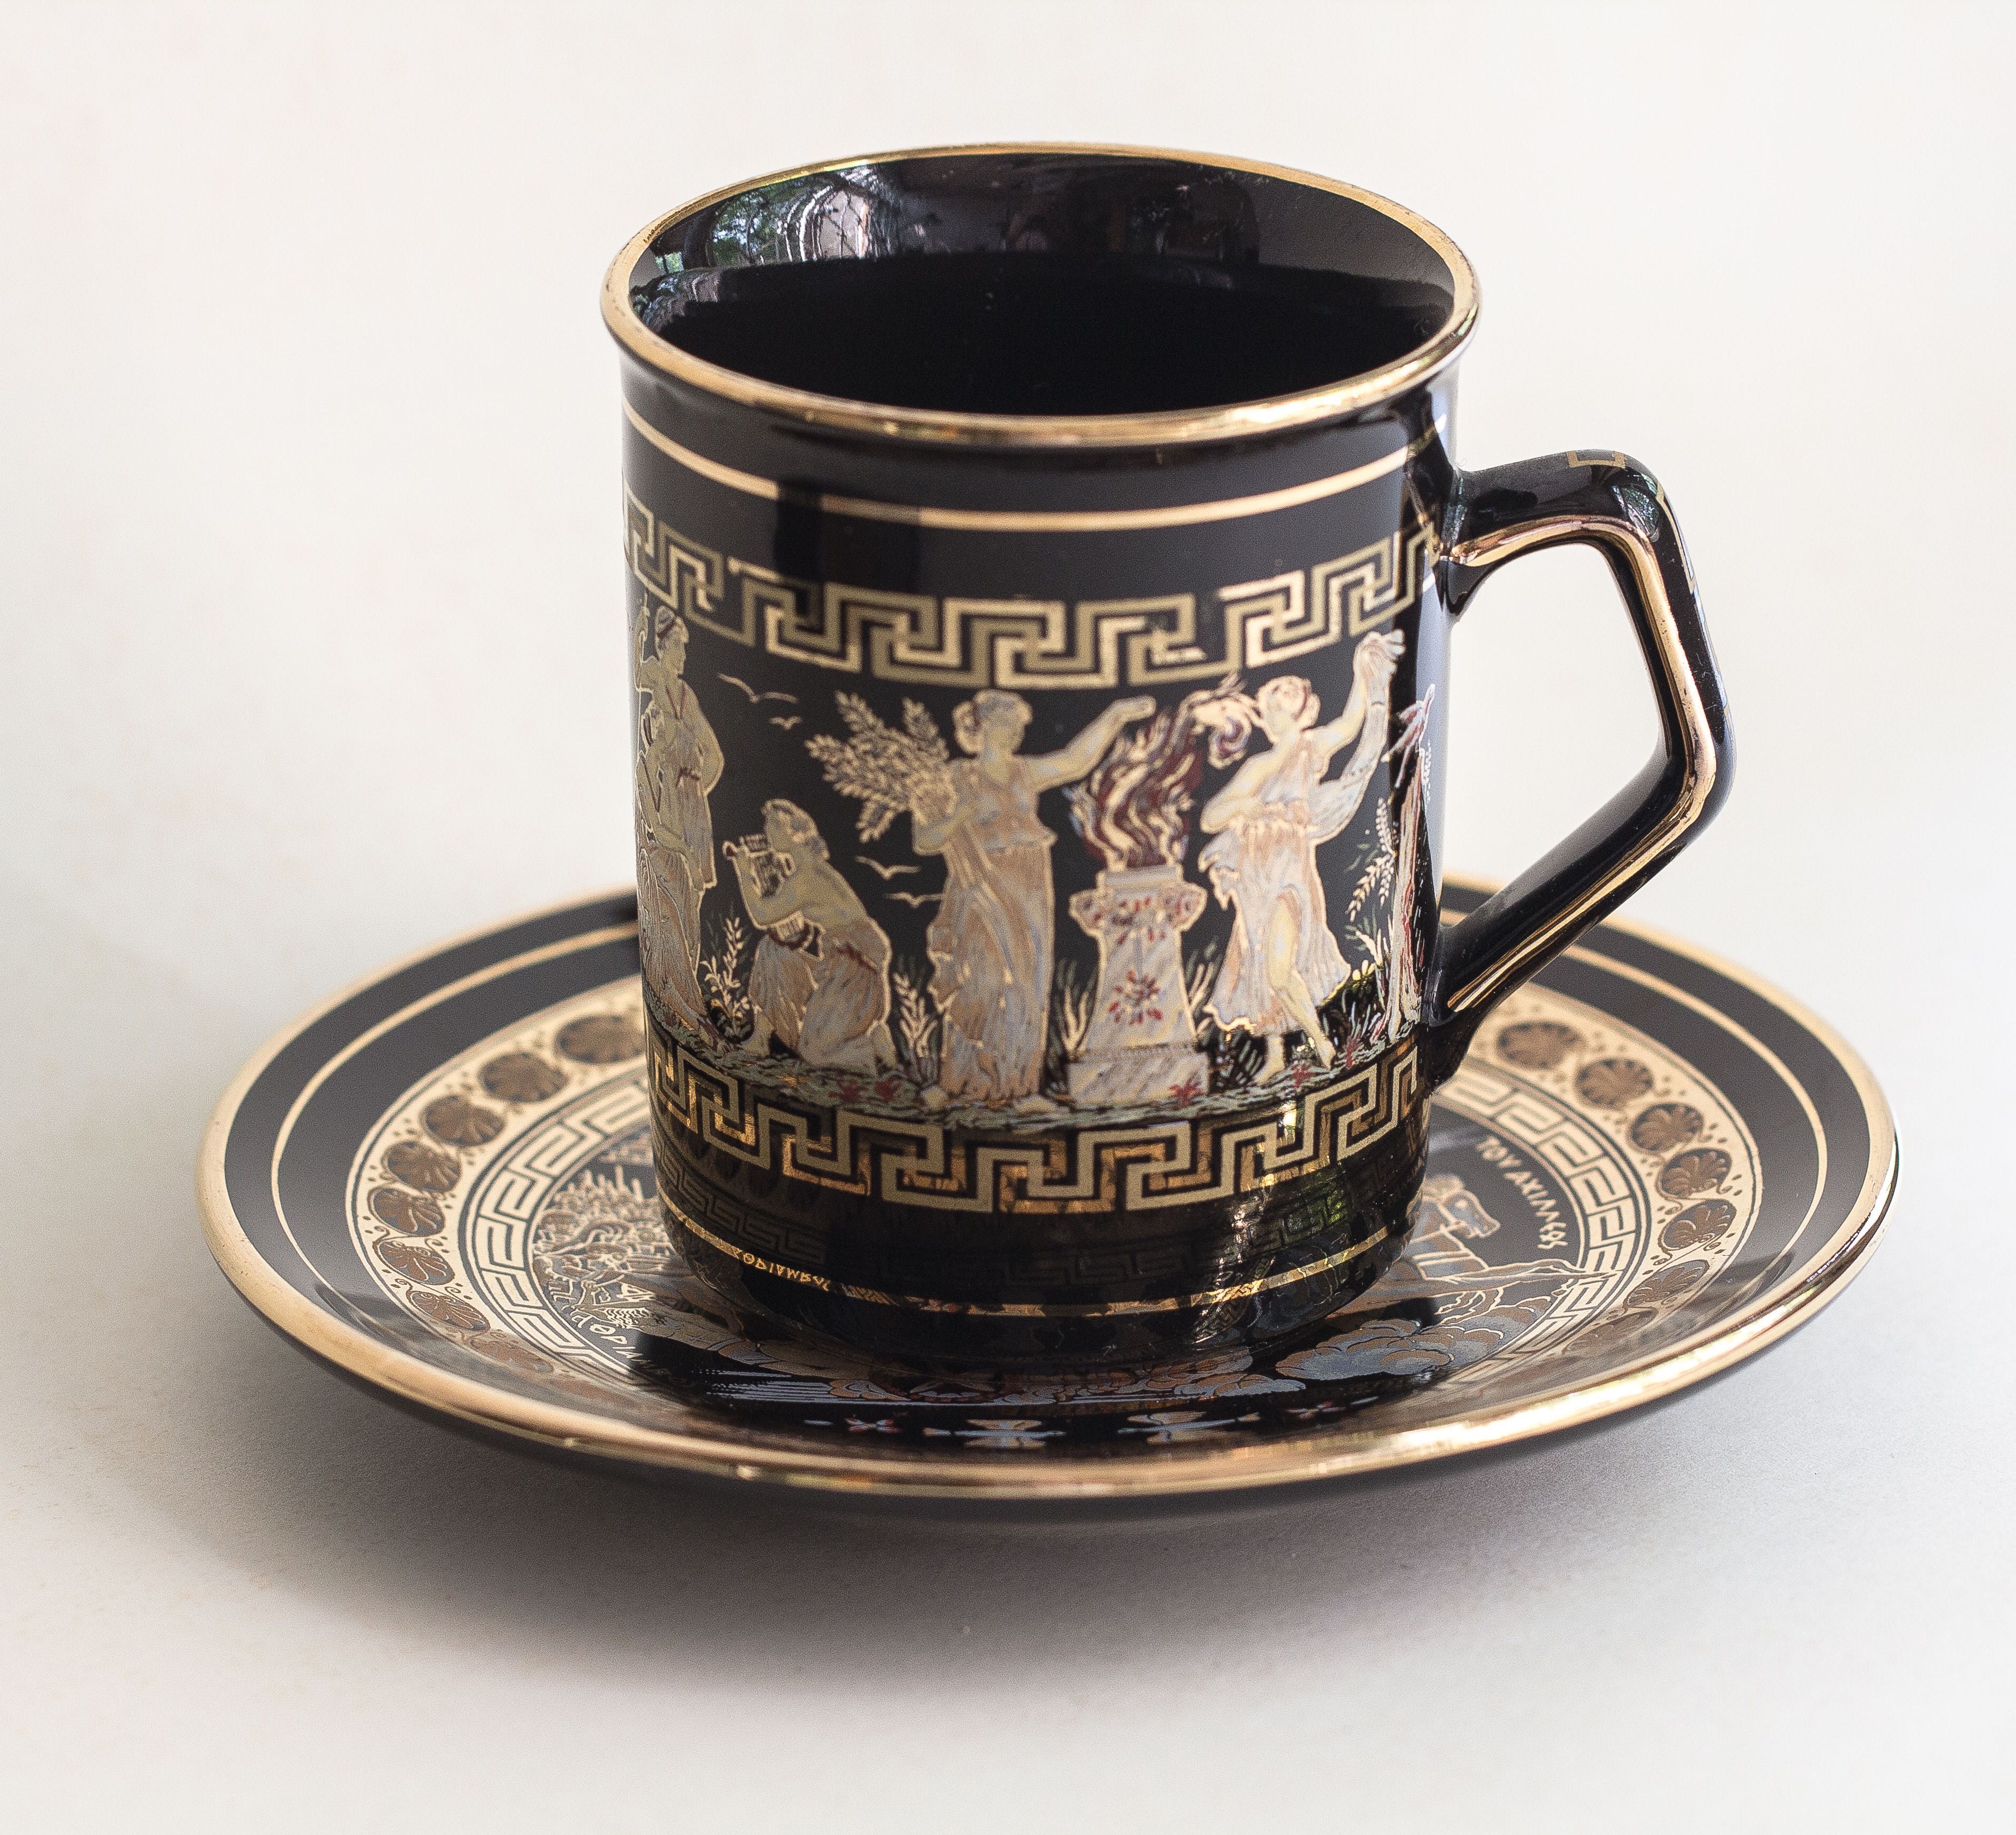 Чашка и блюдце ручной работы с рисунками из греческой мифологии.